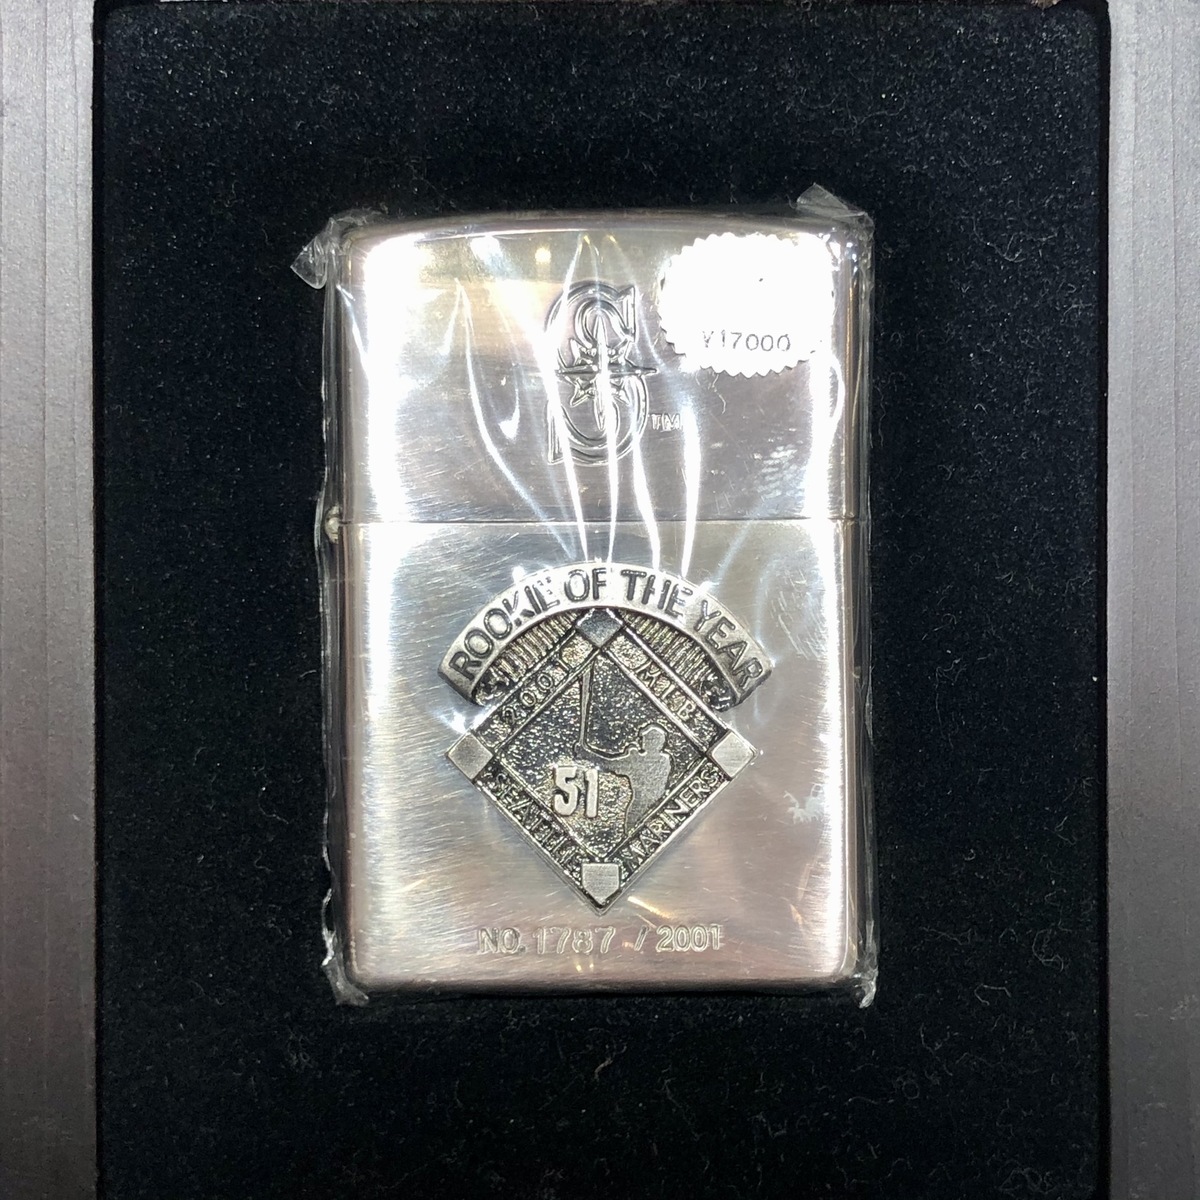 ジッポーの2001年 イチロー MLB 新人賞記念 オイルライターの買取実績です。